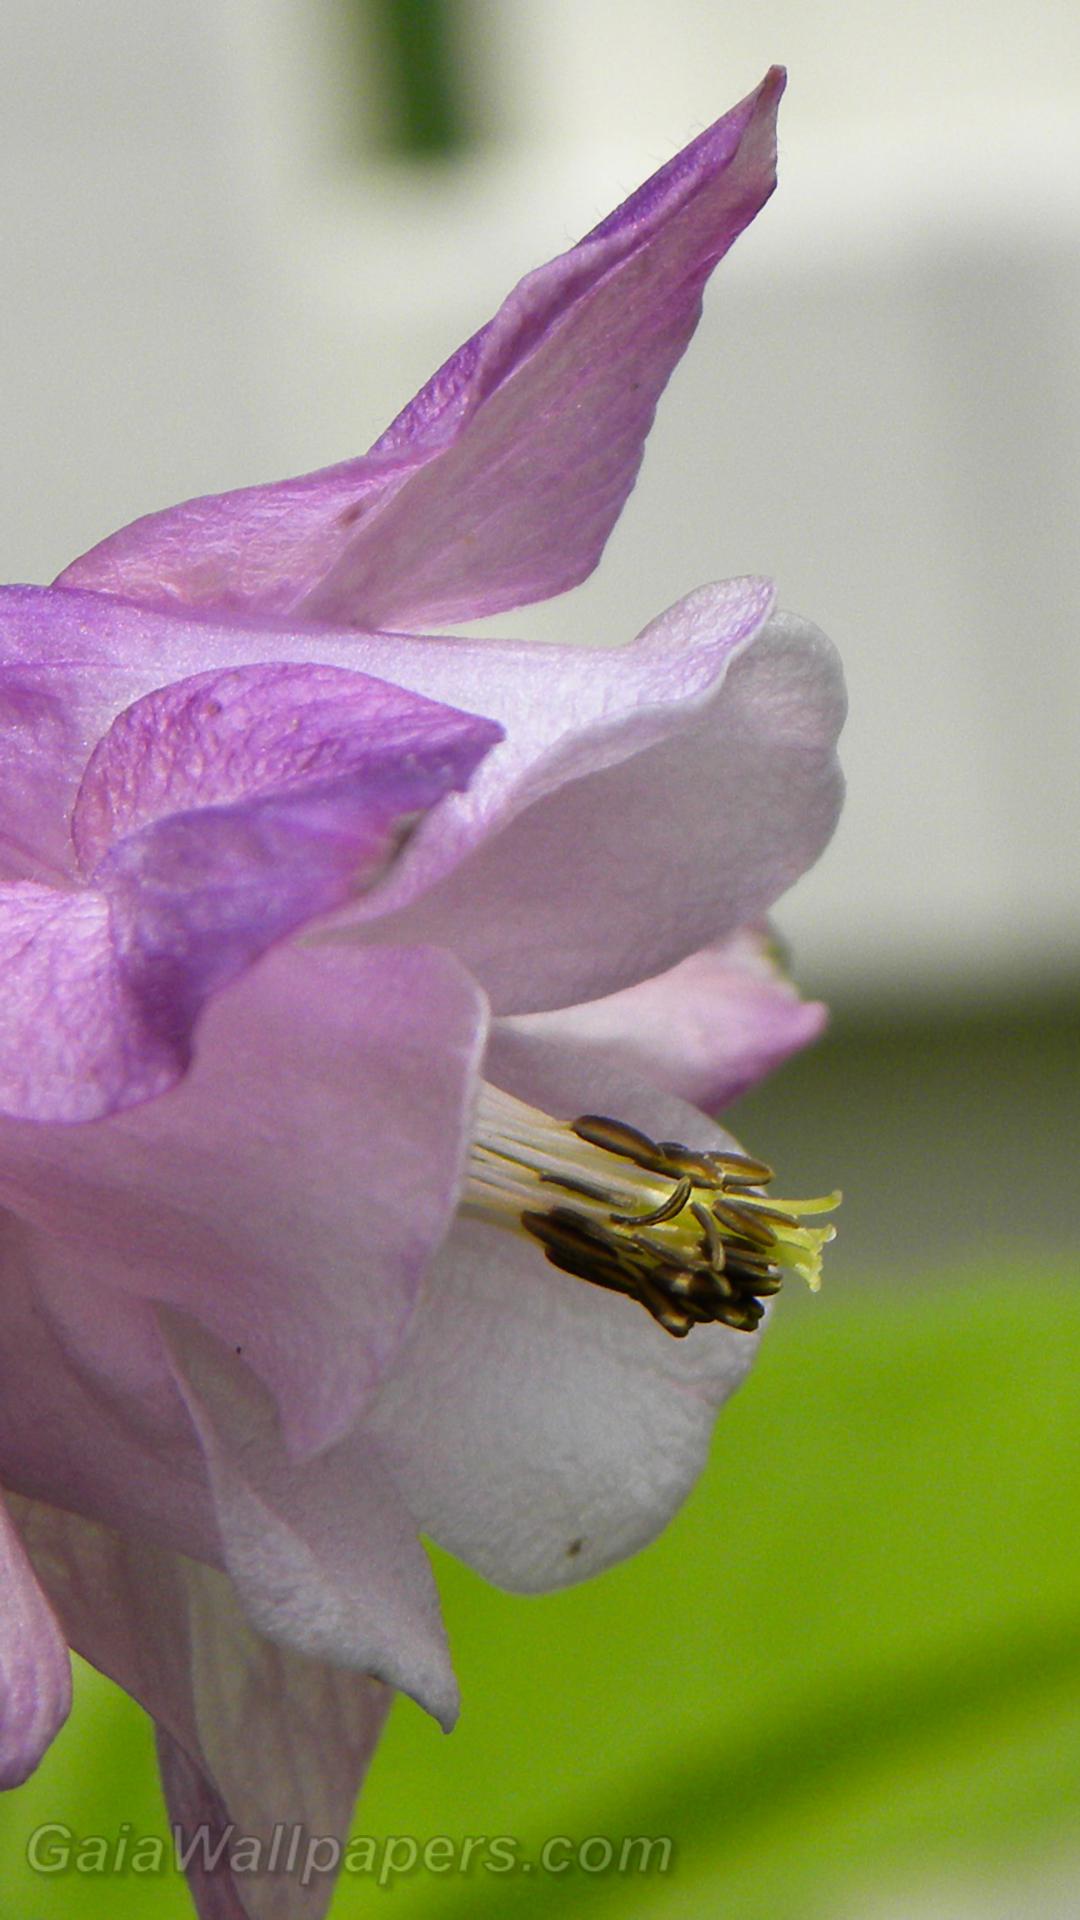 Petit insecte marchant sur une fleur - Fonds d'écran gratuits